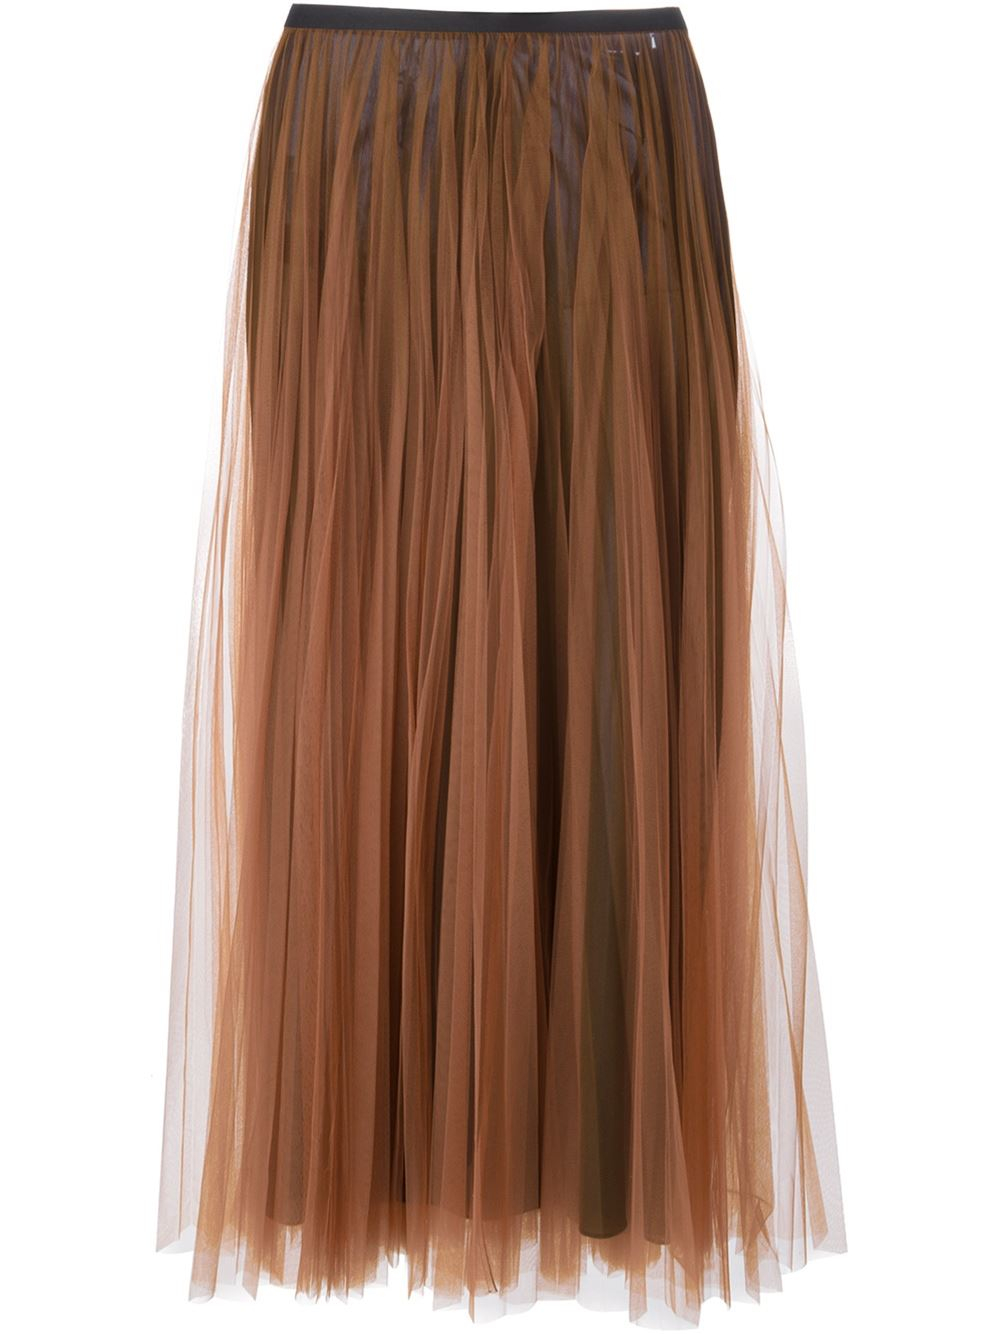 Brown Tulle Skirt 106